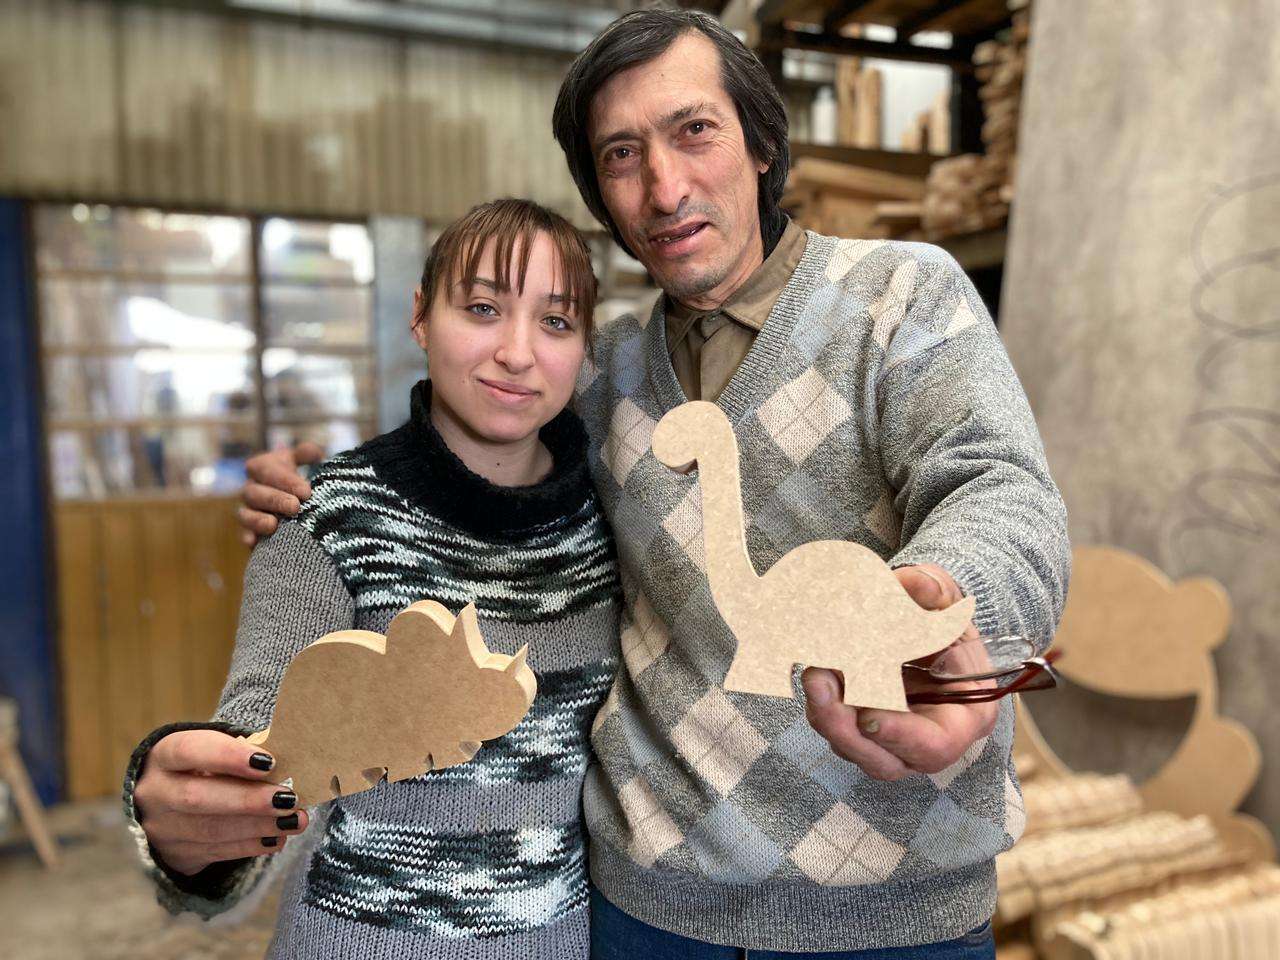 Como cada año, el carpintero solidario Miguel hace juguetes para donar a los niños en su día